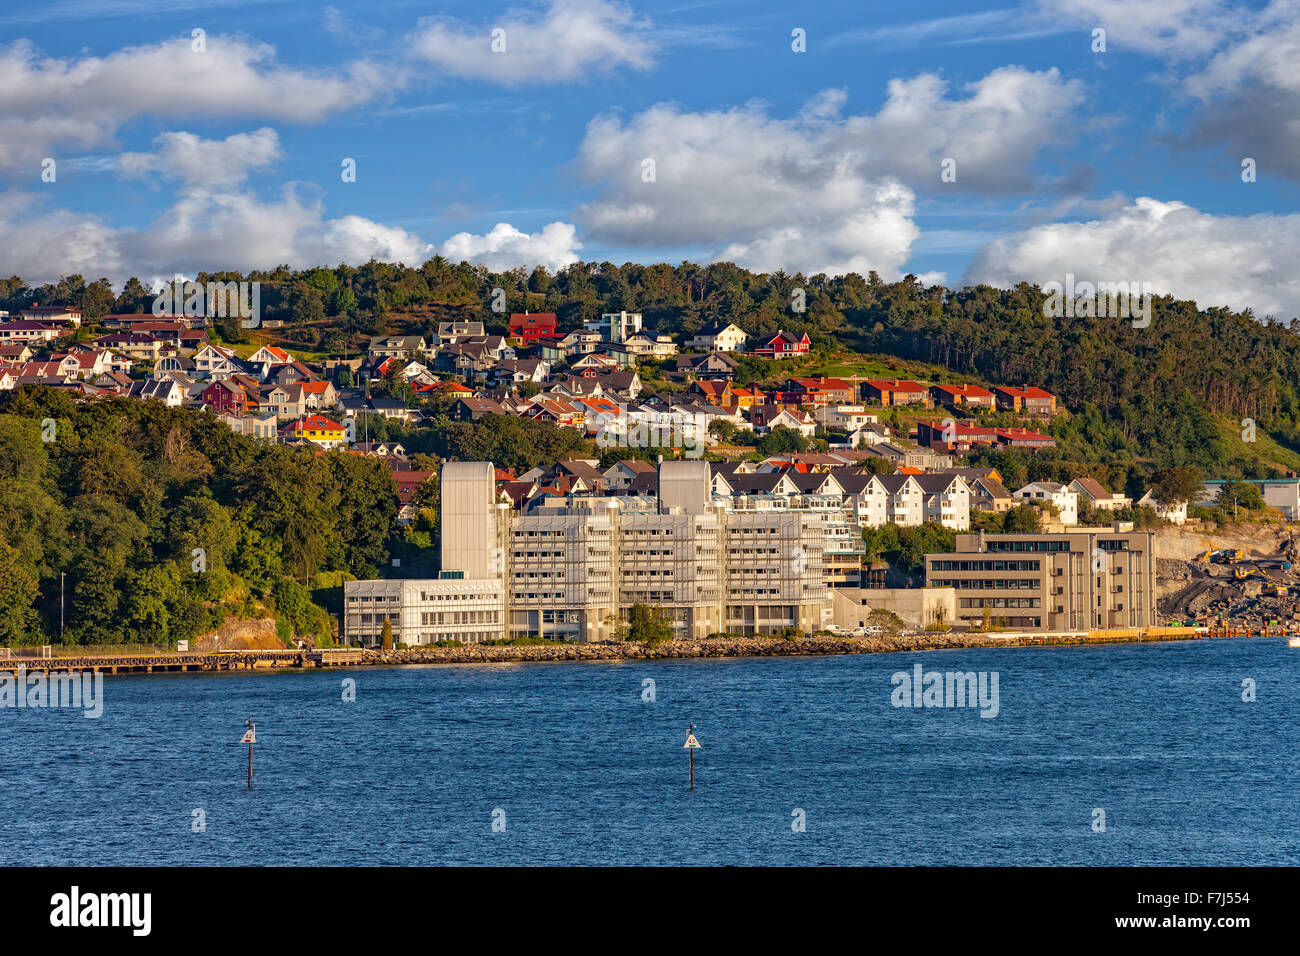 Cityscape architecture typique de Stavanger, Norvège. Banque D'Images